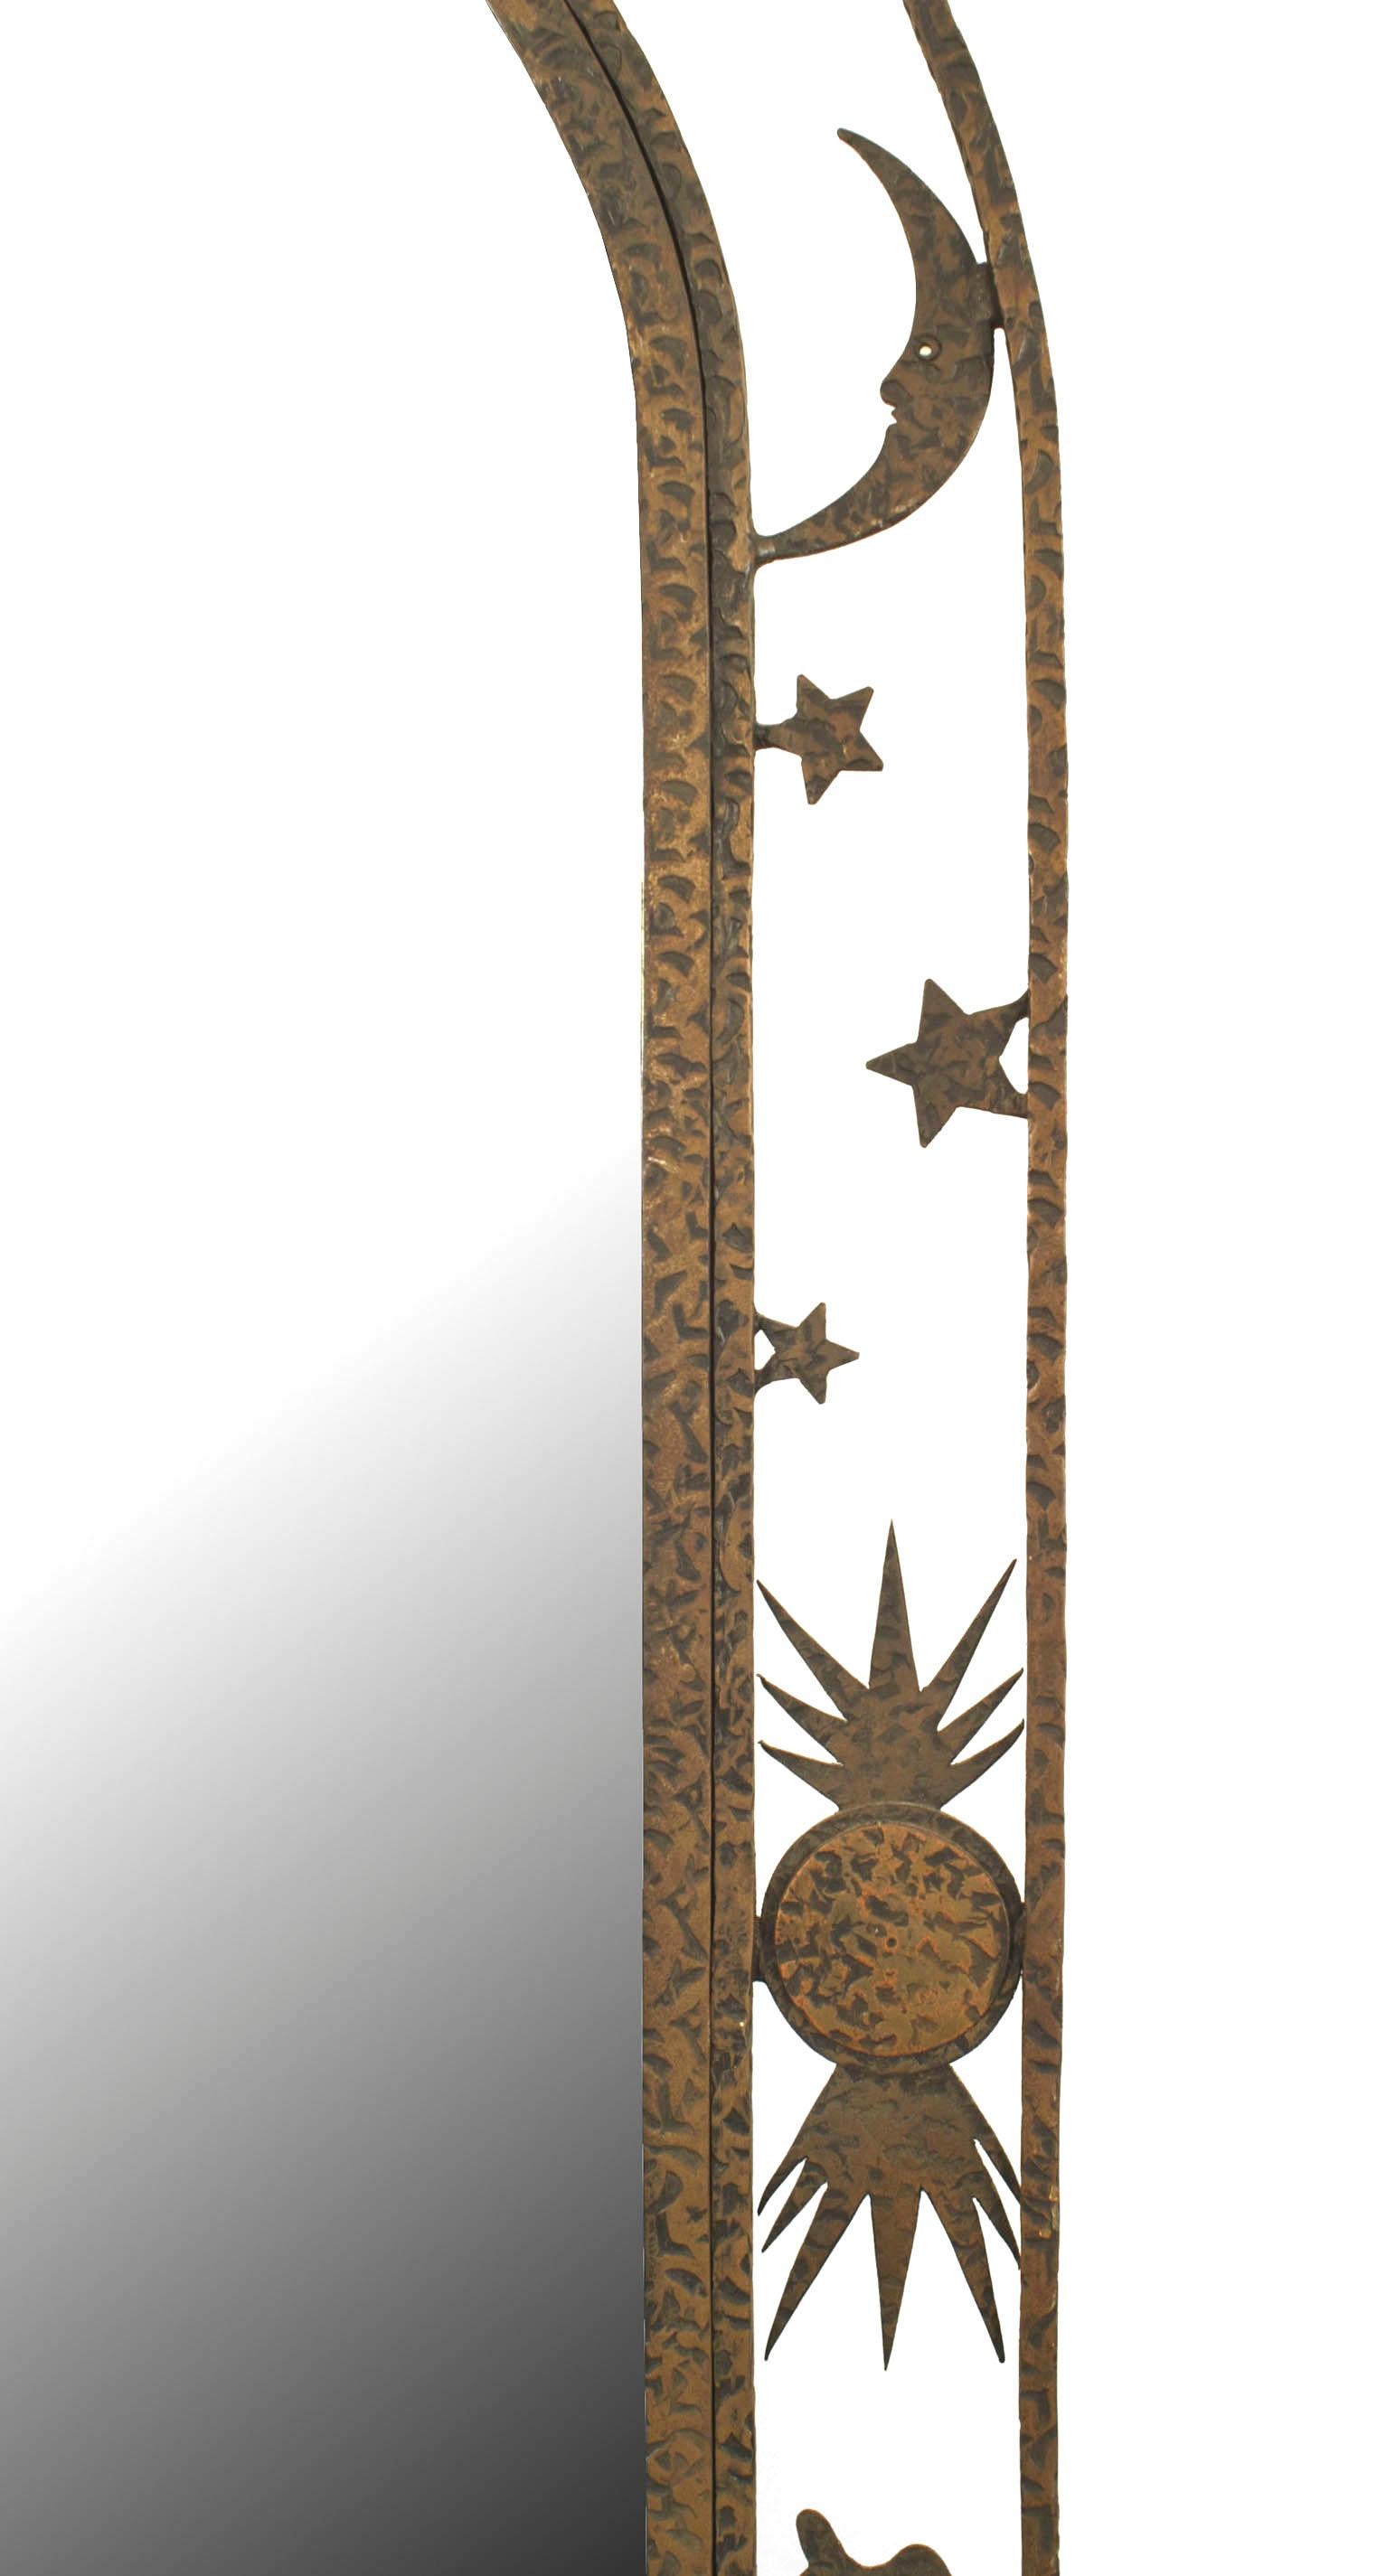 Miroir chevalier en fer forgé Art Déco français, avec un sommet en forme d'arc et une bordure filigranée ouverte sur une base rectangulaire en gradins.
 